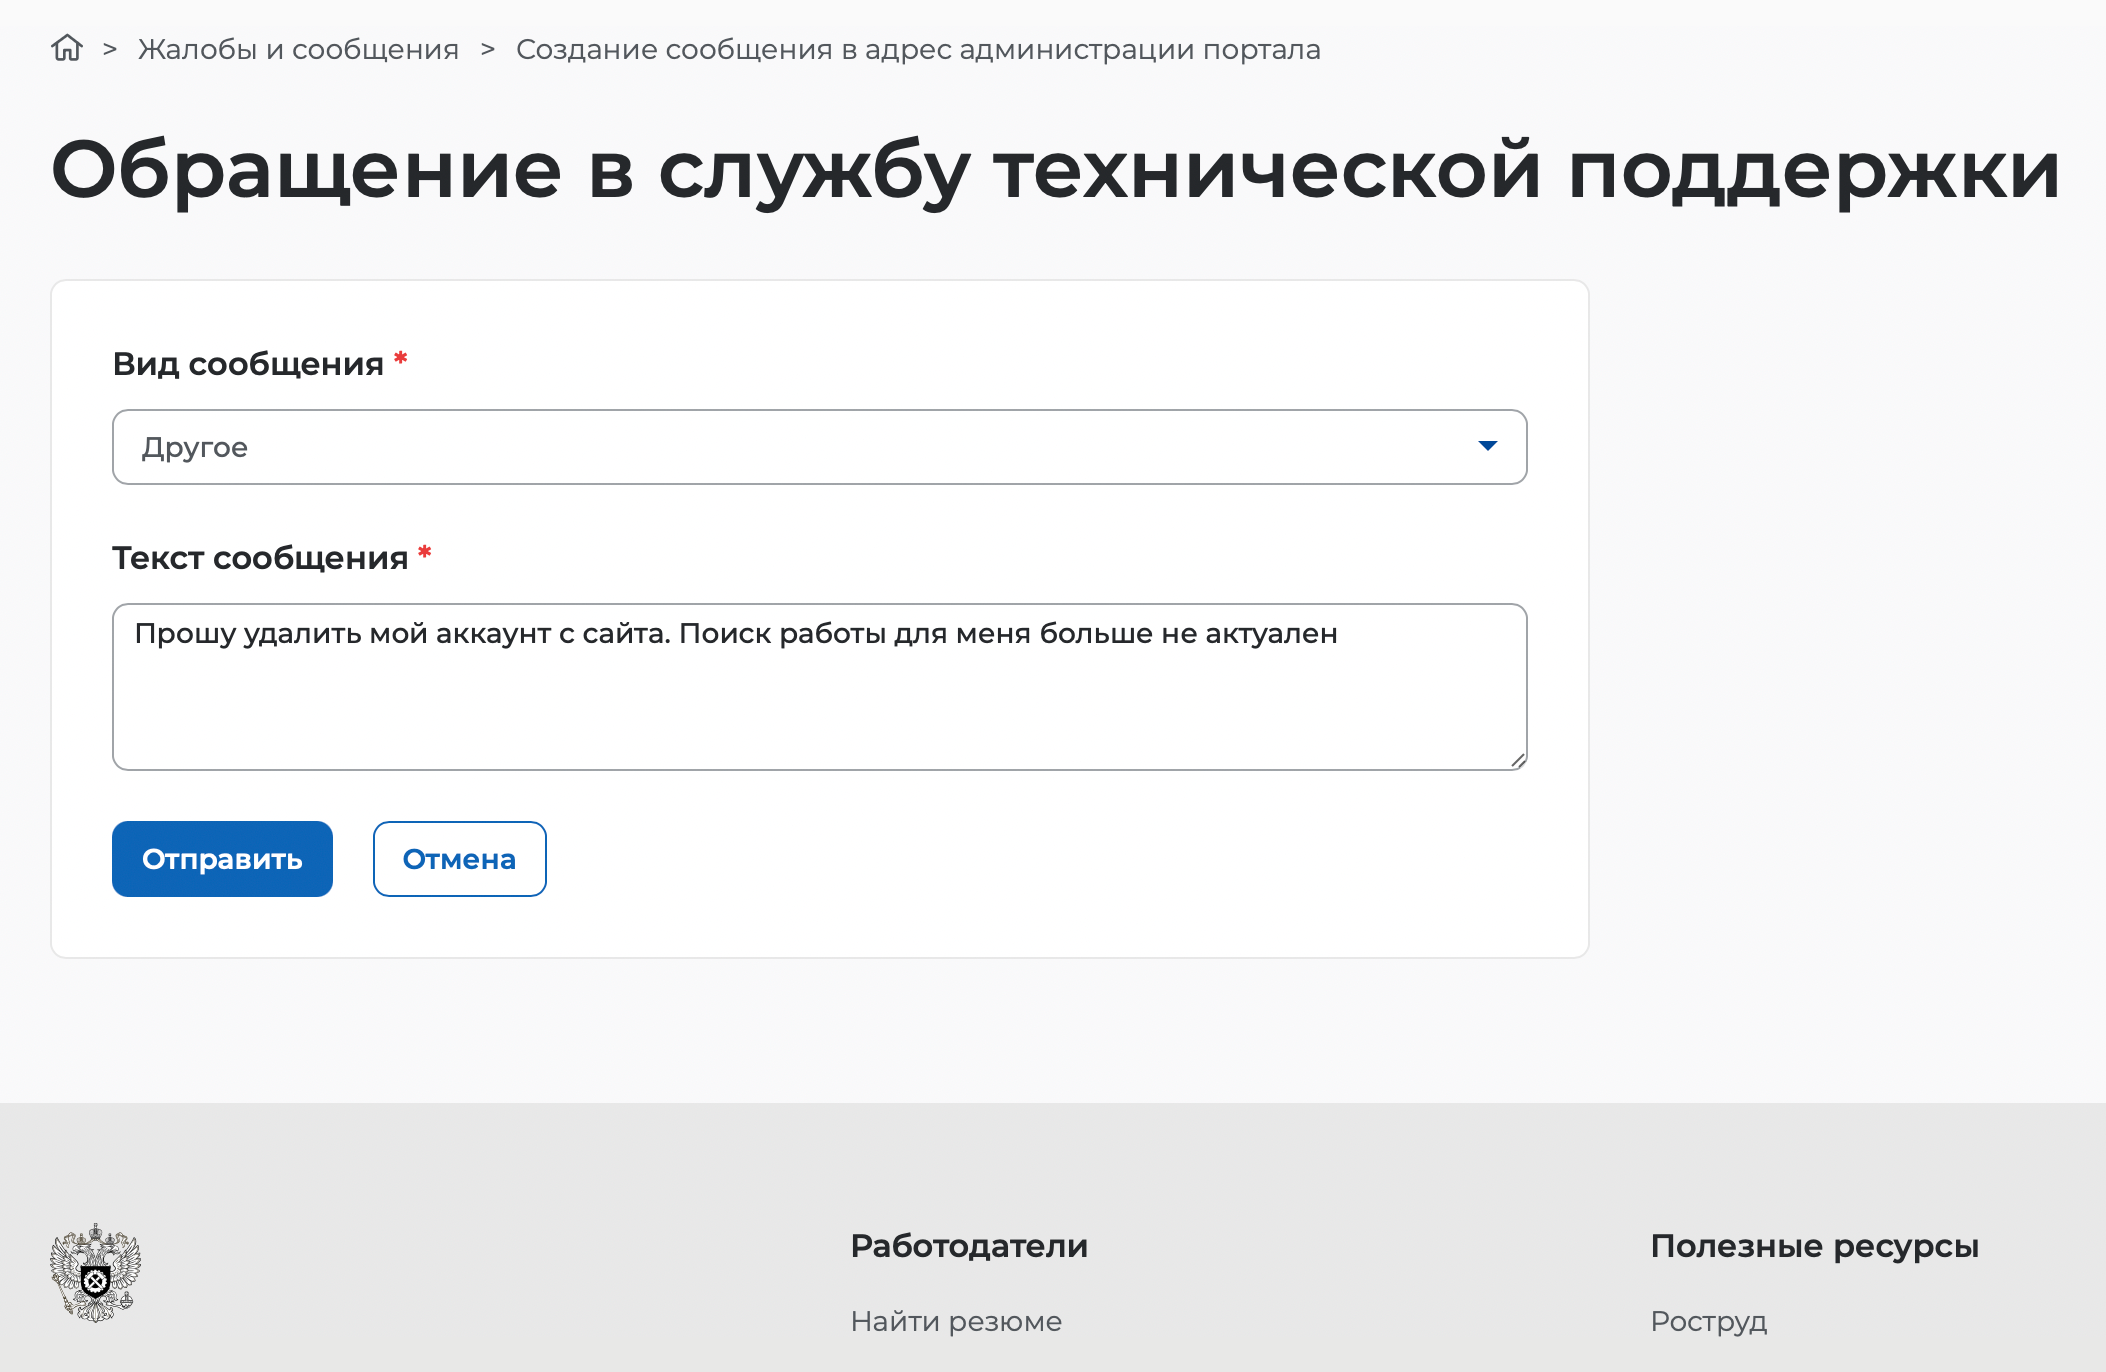 Инструкция, как удалить аккаунт на «Работа России». Источник: trudvem.ru